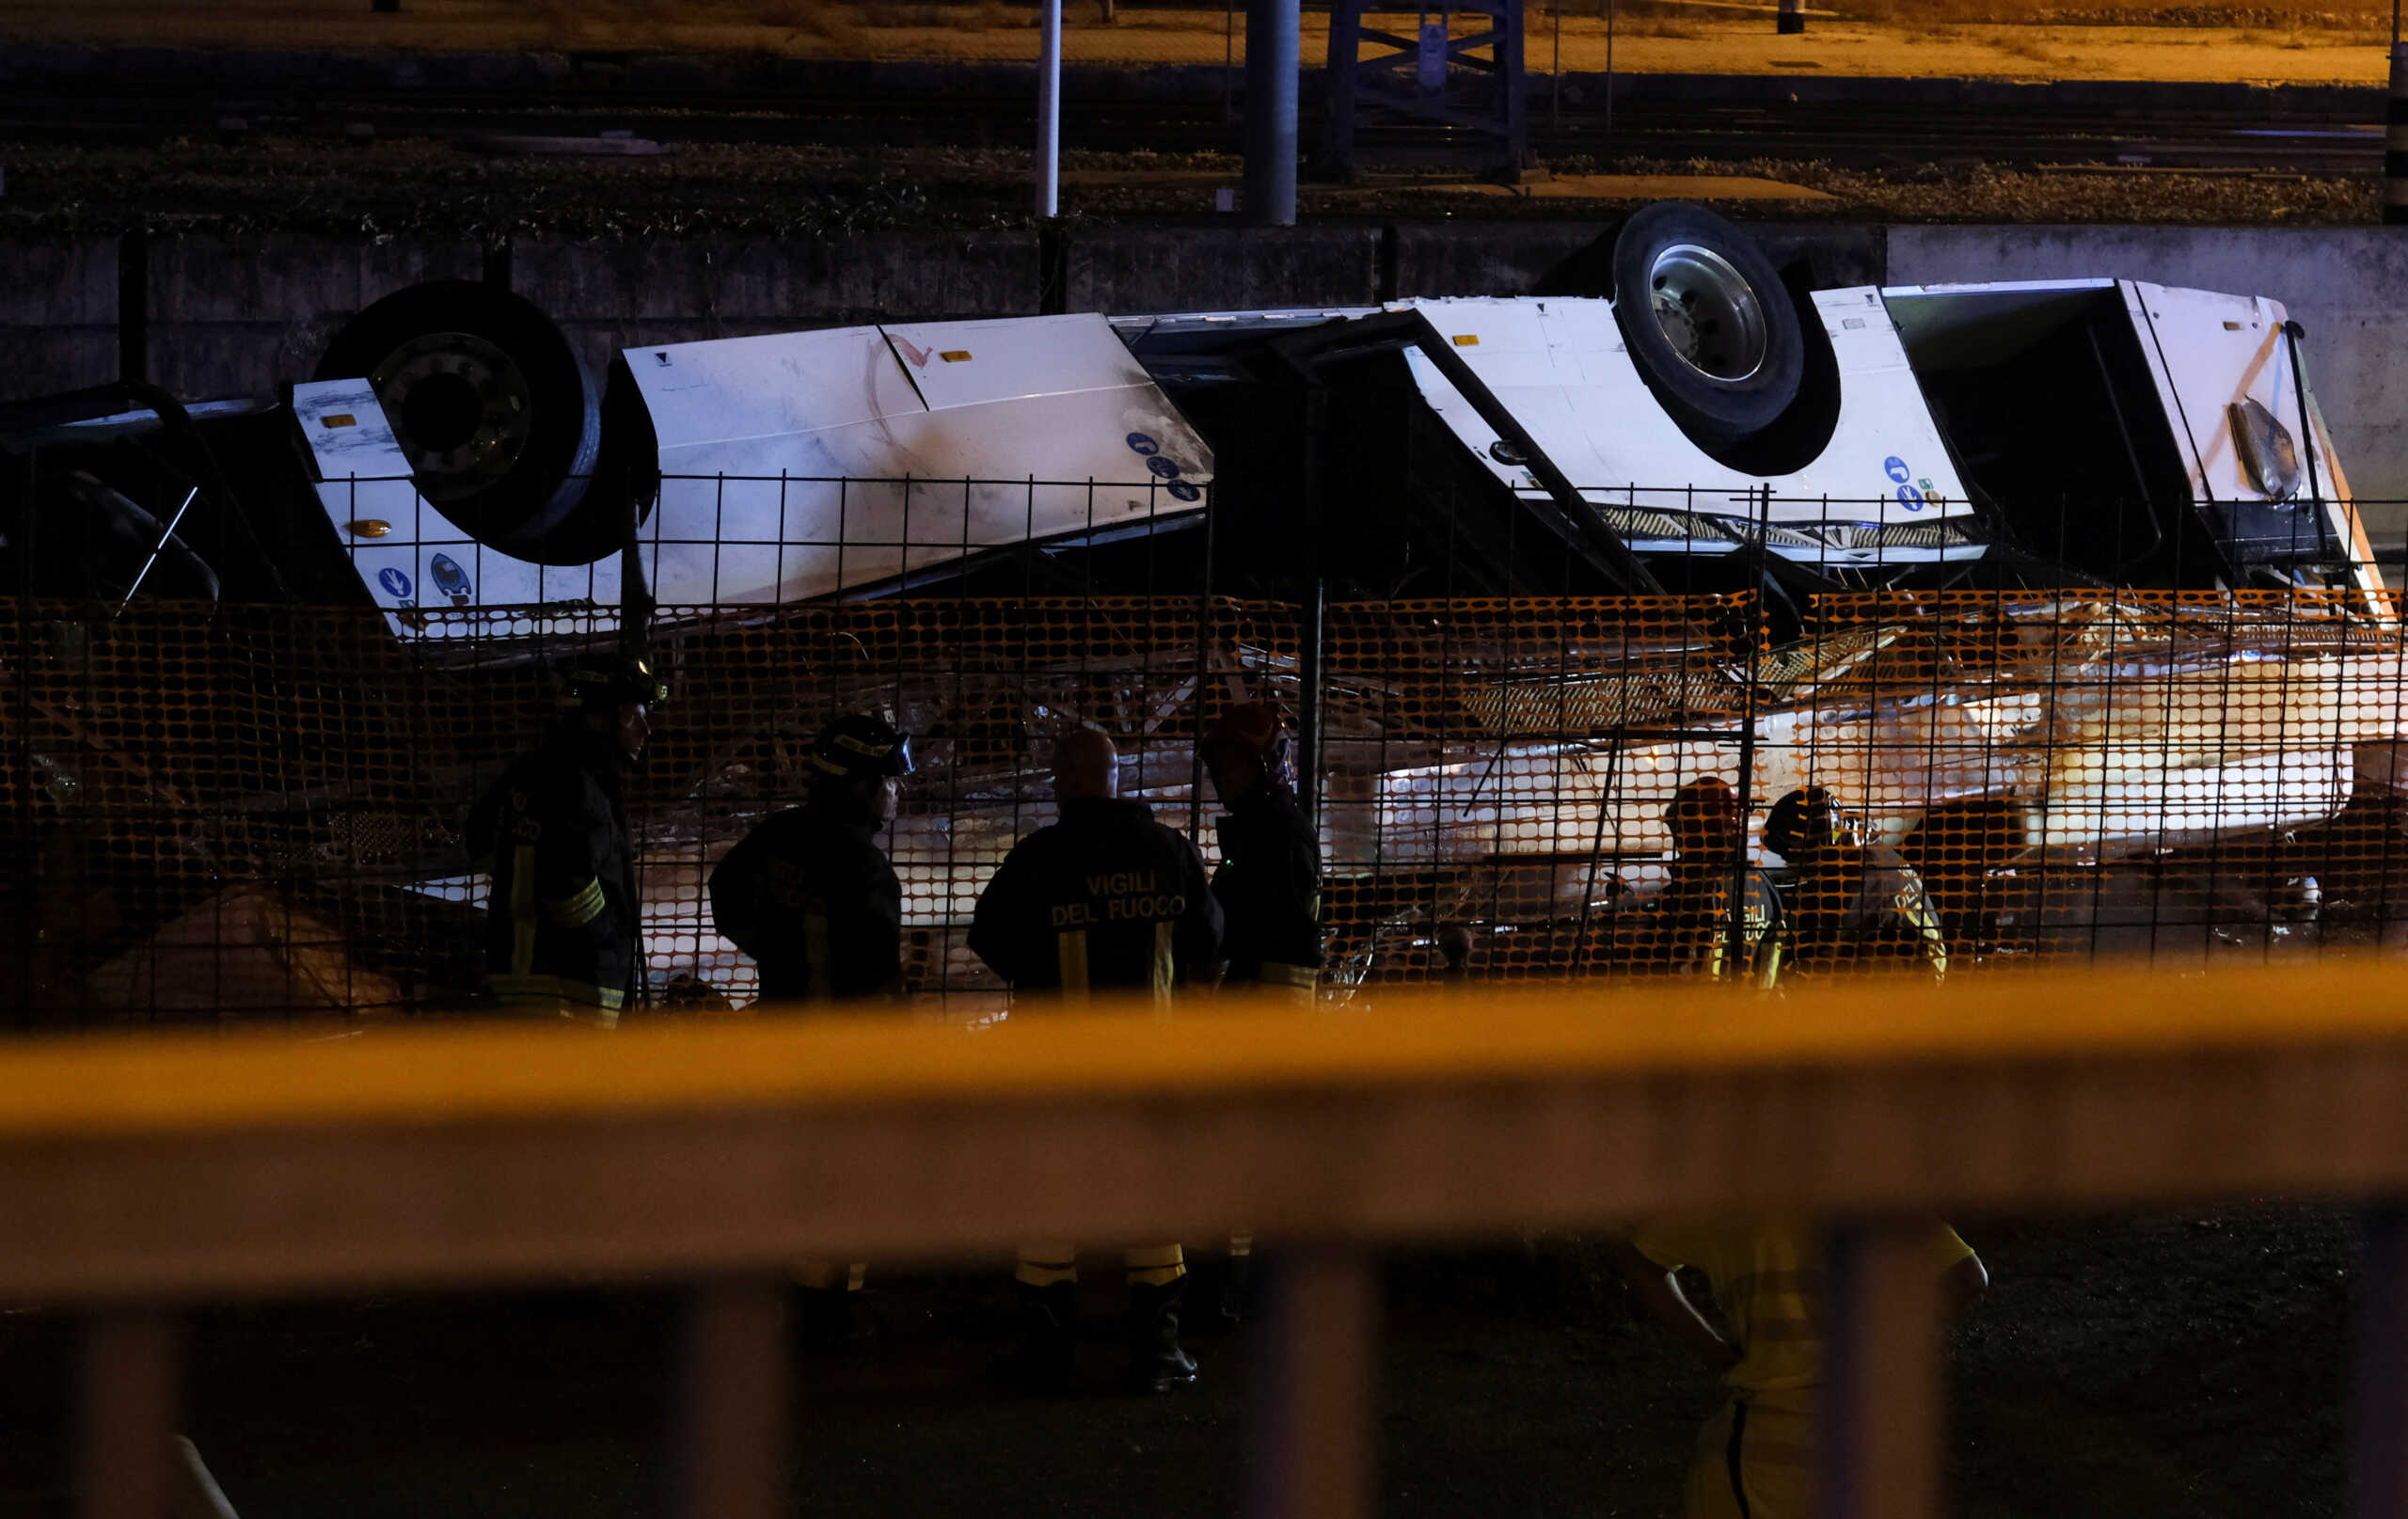 Βενετία: Έτσι έπεσε το λεωφορείο από τη γέφυρα – Νεκροί 21 άνθρωποι, 4 χαροπαλεύουν